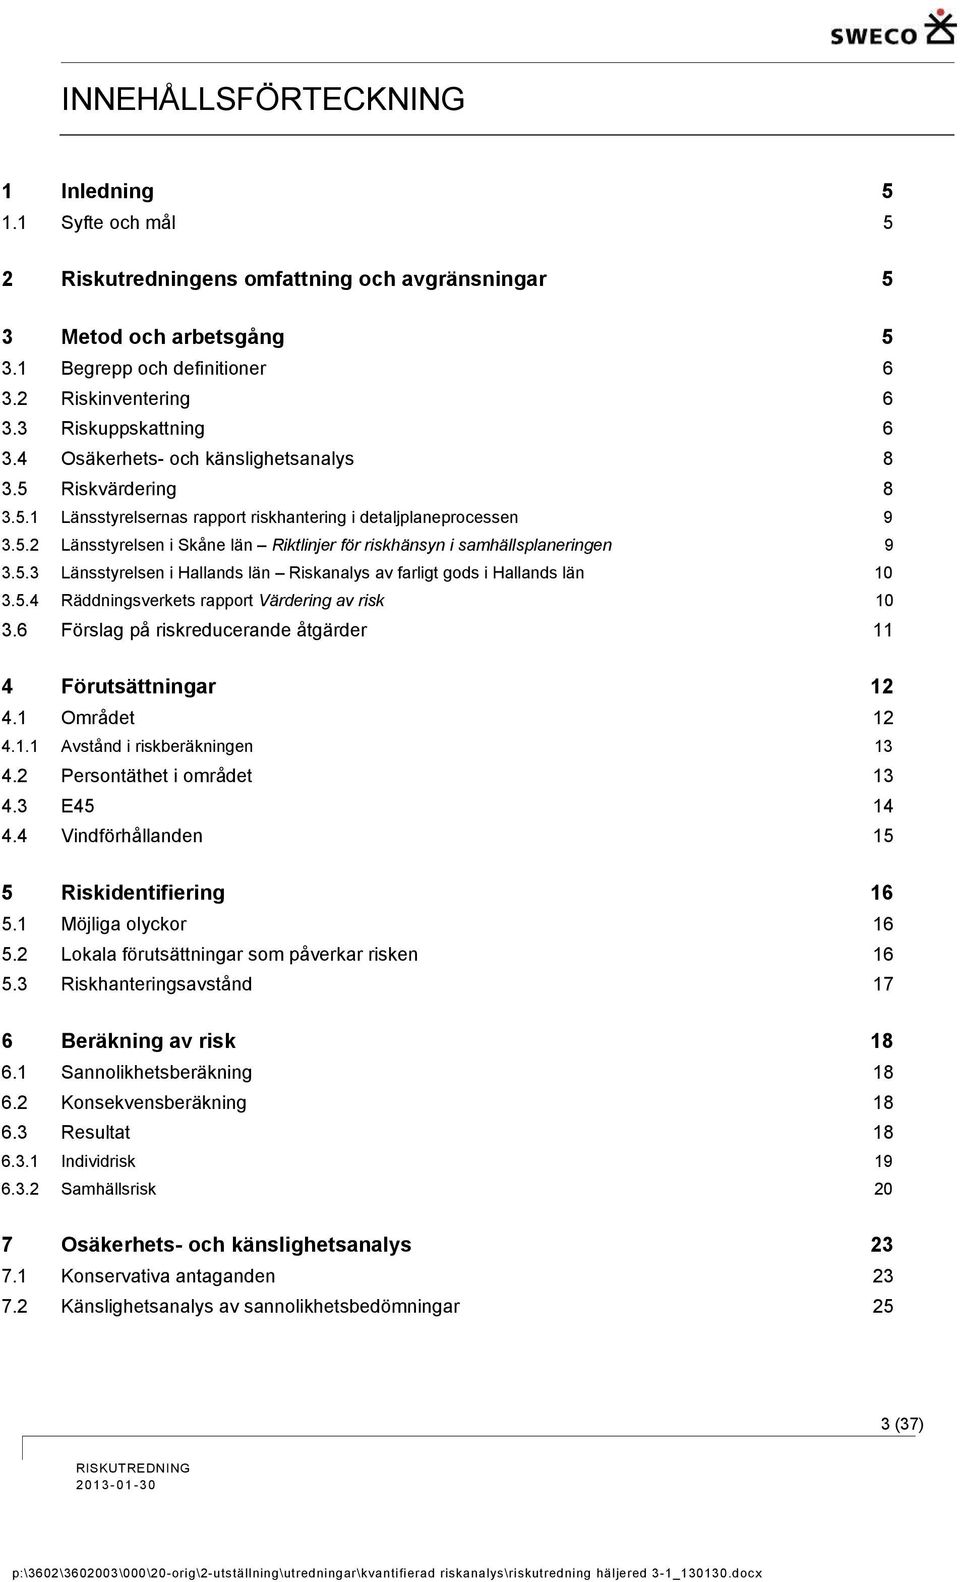 5.3 Länsstyrelsen i Hallands län Riskanalys av farligt gods i Hallands län 10 3.5.4 Räddningsverkets rapport Värdering av risk 10 3.6 Förslag på riskreducerande åtgärder 11 4 Förutsättningar 12 4.